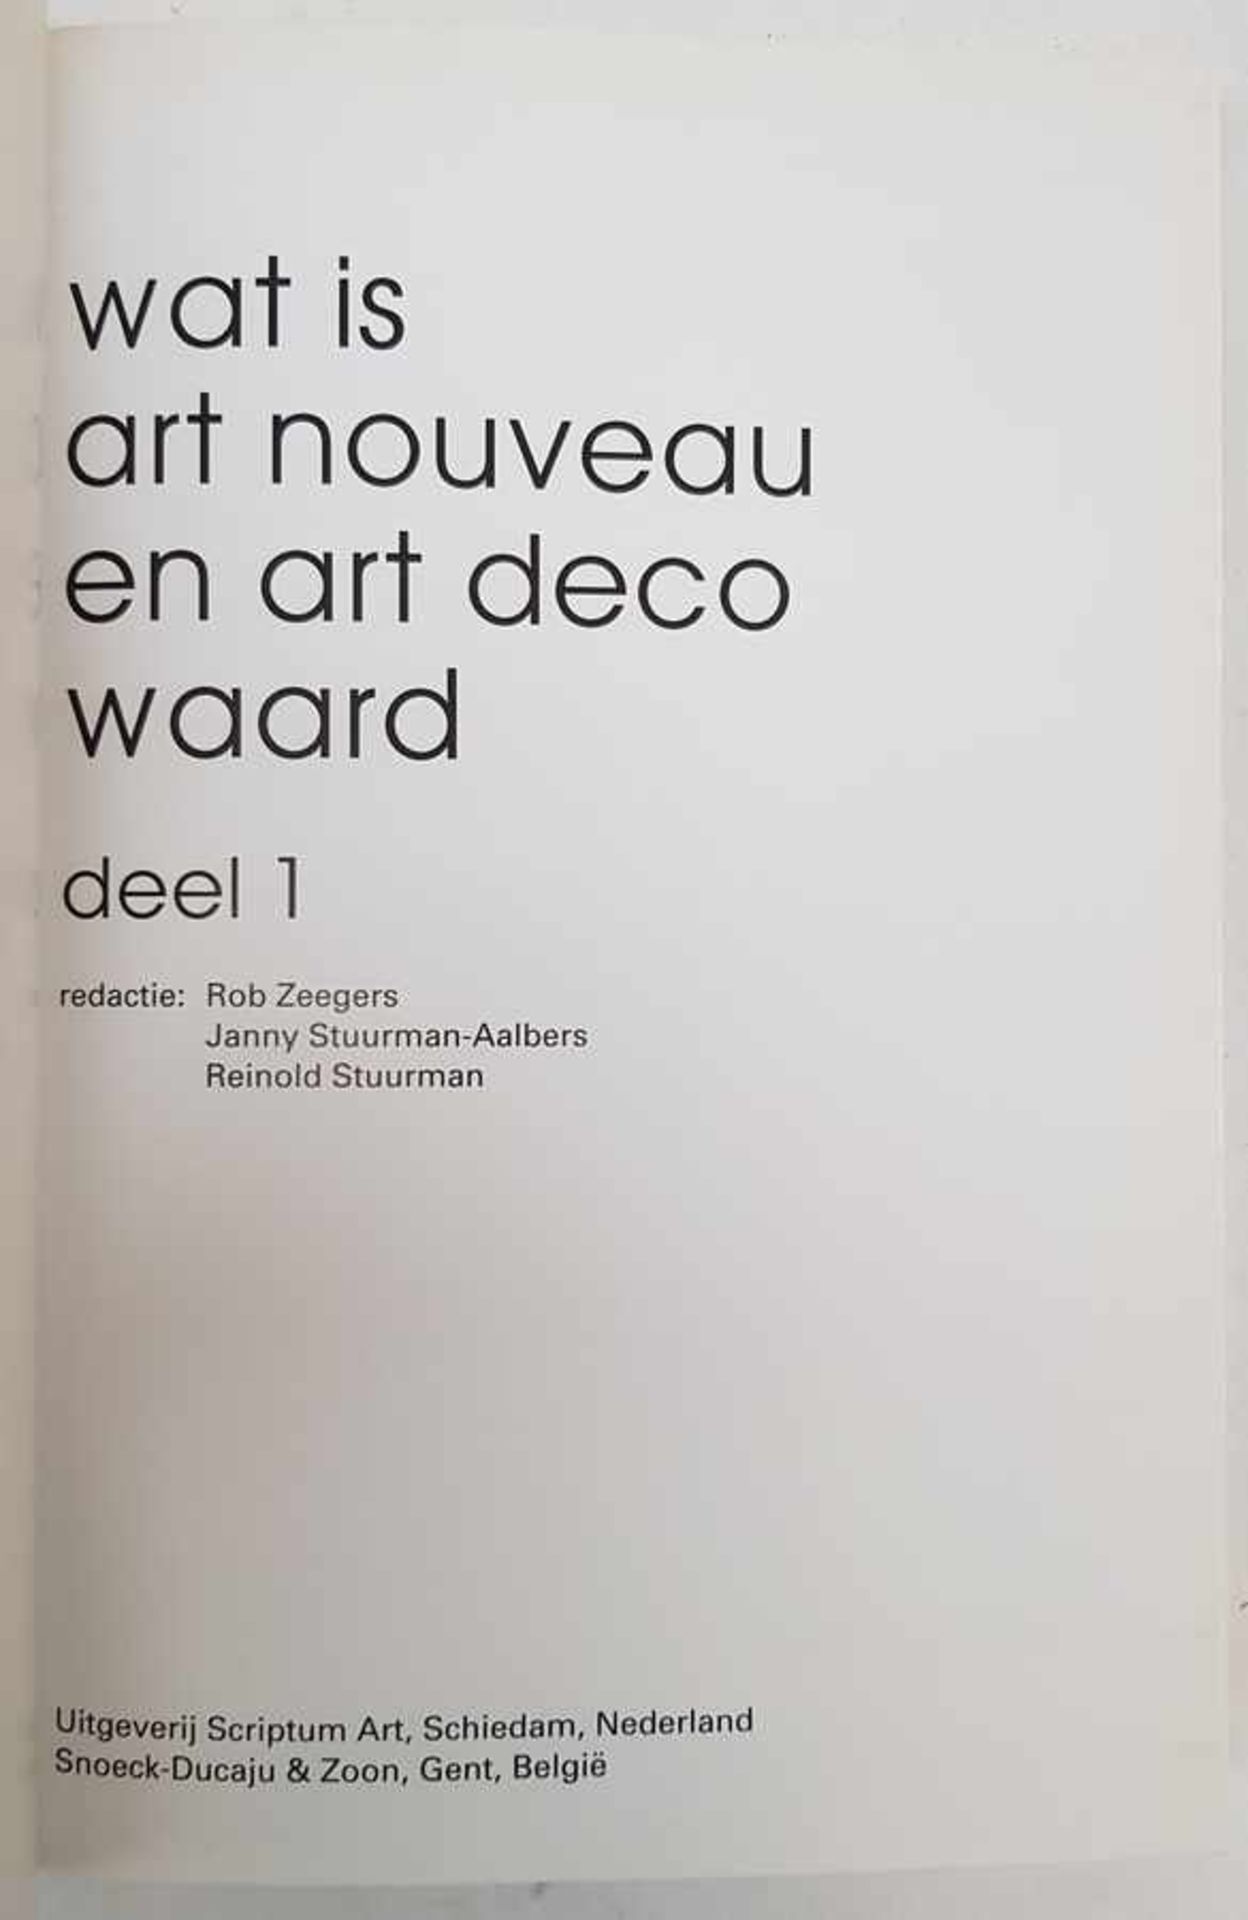 (Boeken) (Kunst) Ron Zeegers e.a. (red.) - Wat is Art Nouveau en Art Deco waard (2dl.)Rob Zeegers - Bild 3 aus 6